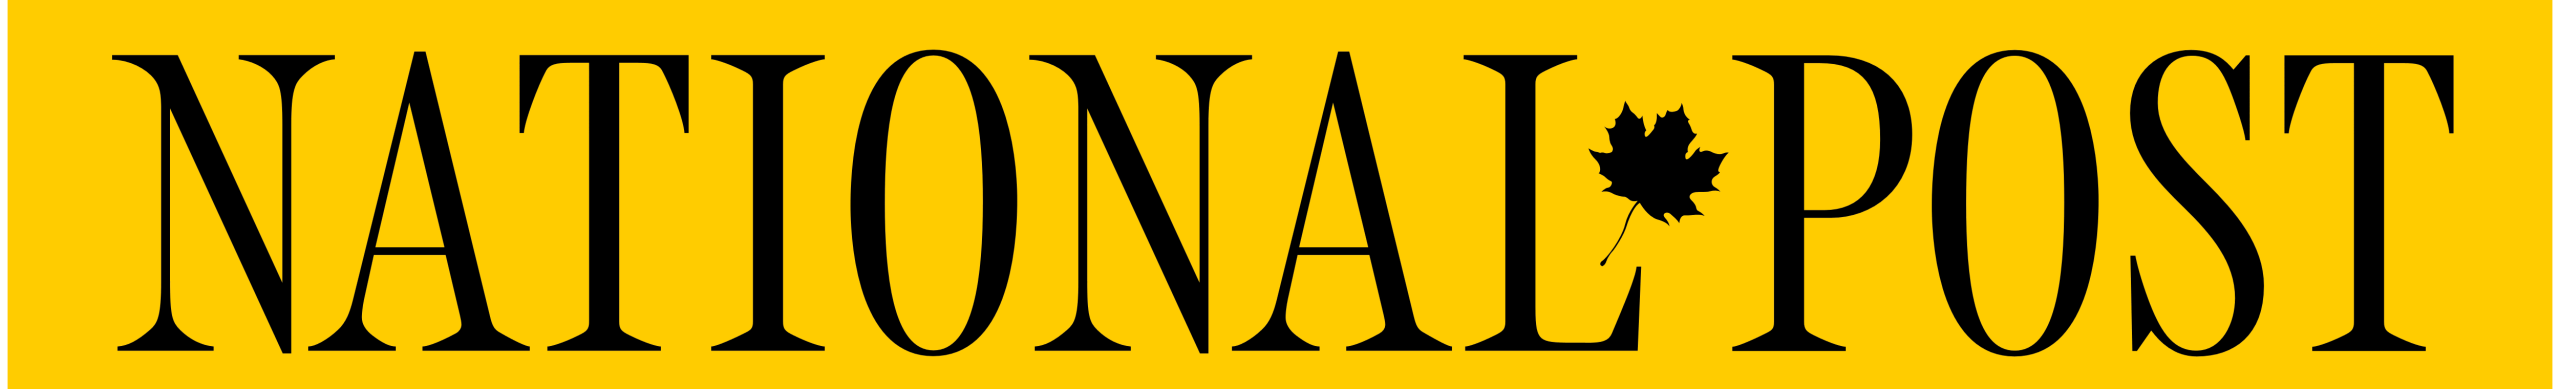 logo de la poste nationale en lettres noires sur fond jaune